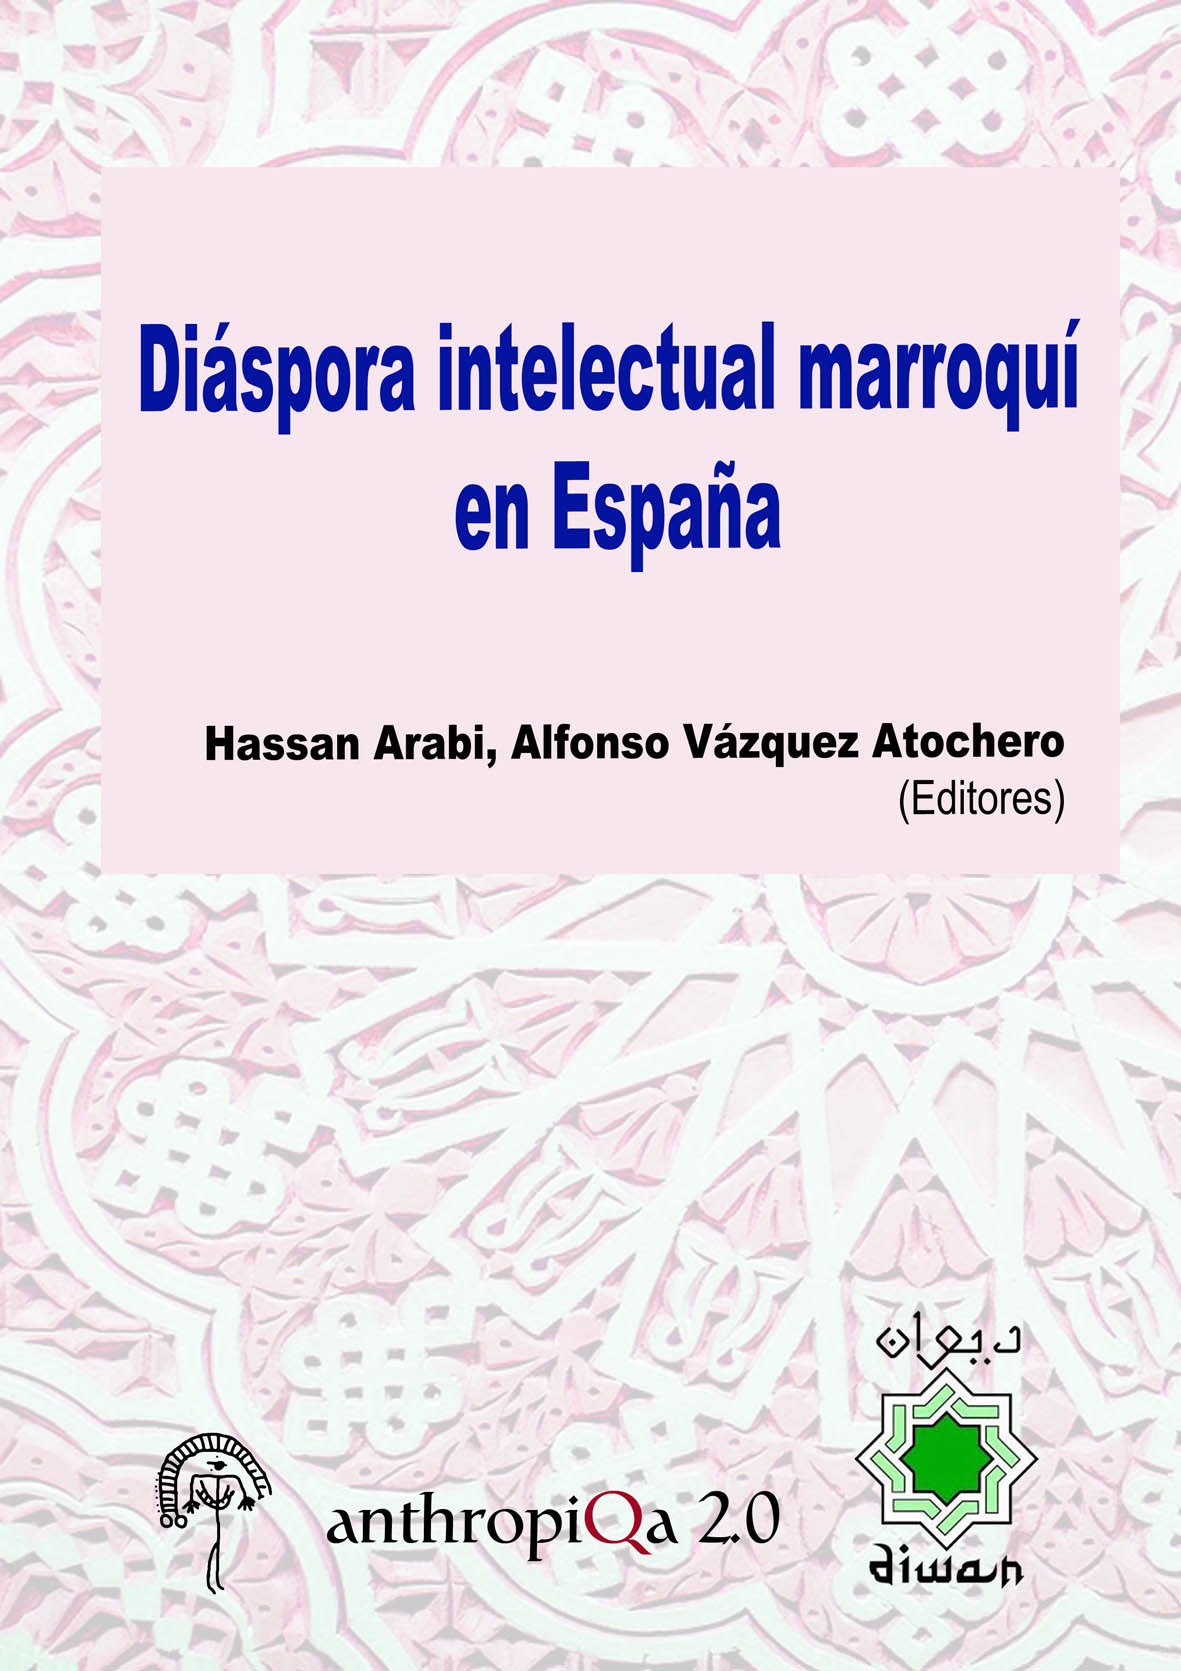 Imagen de portada del libro Diáspora intelectual marroquí en España.